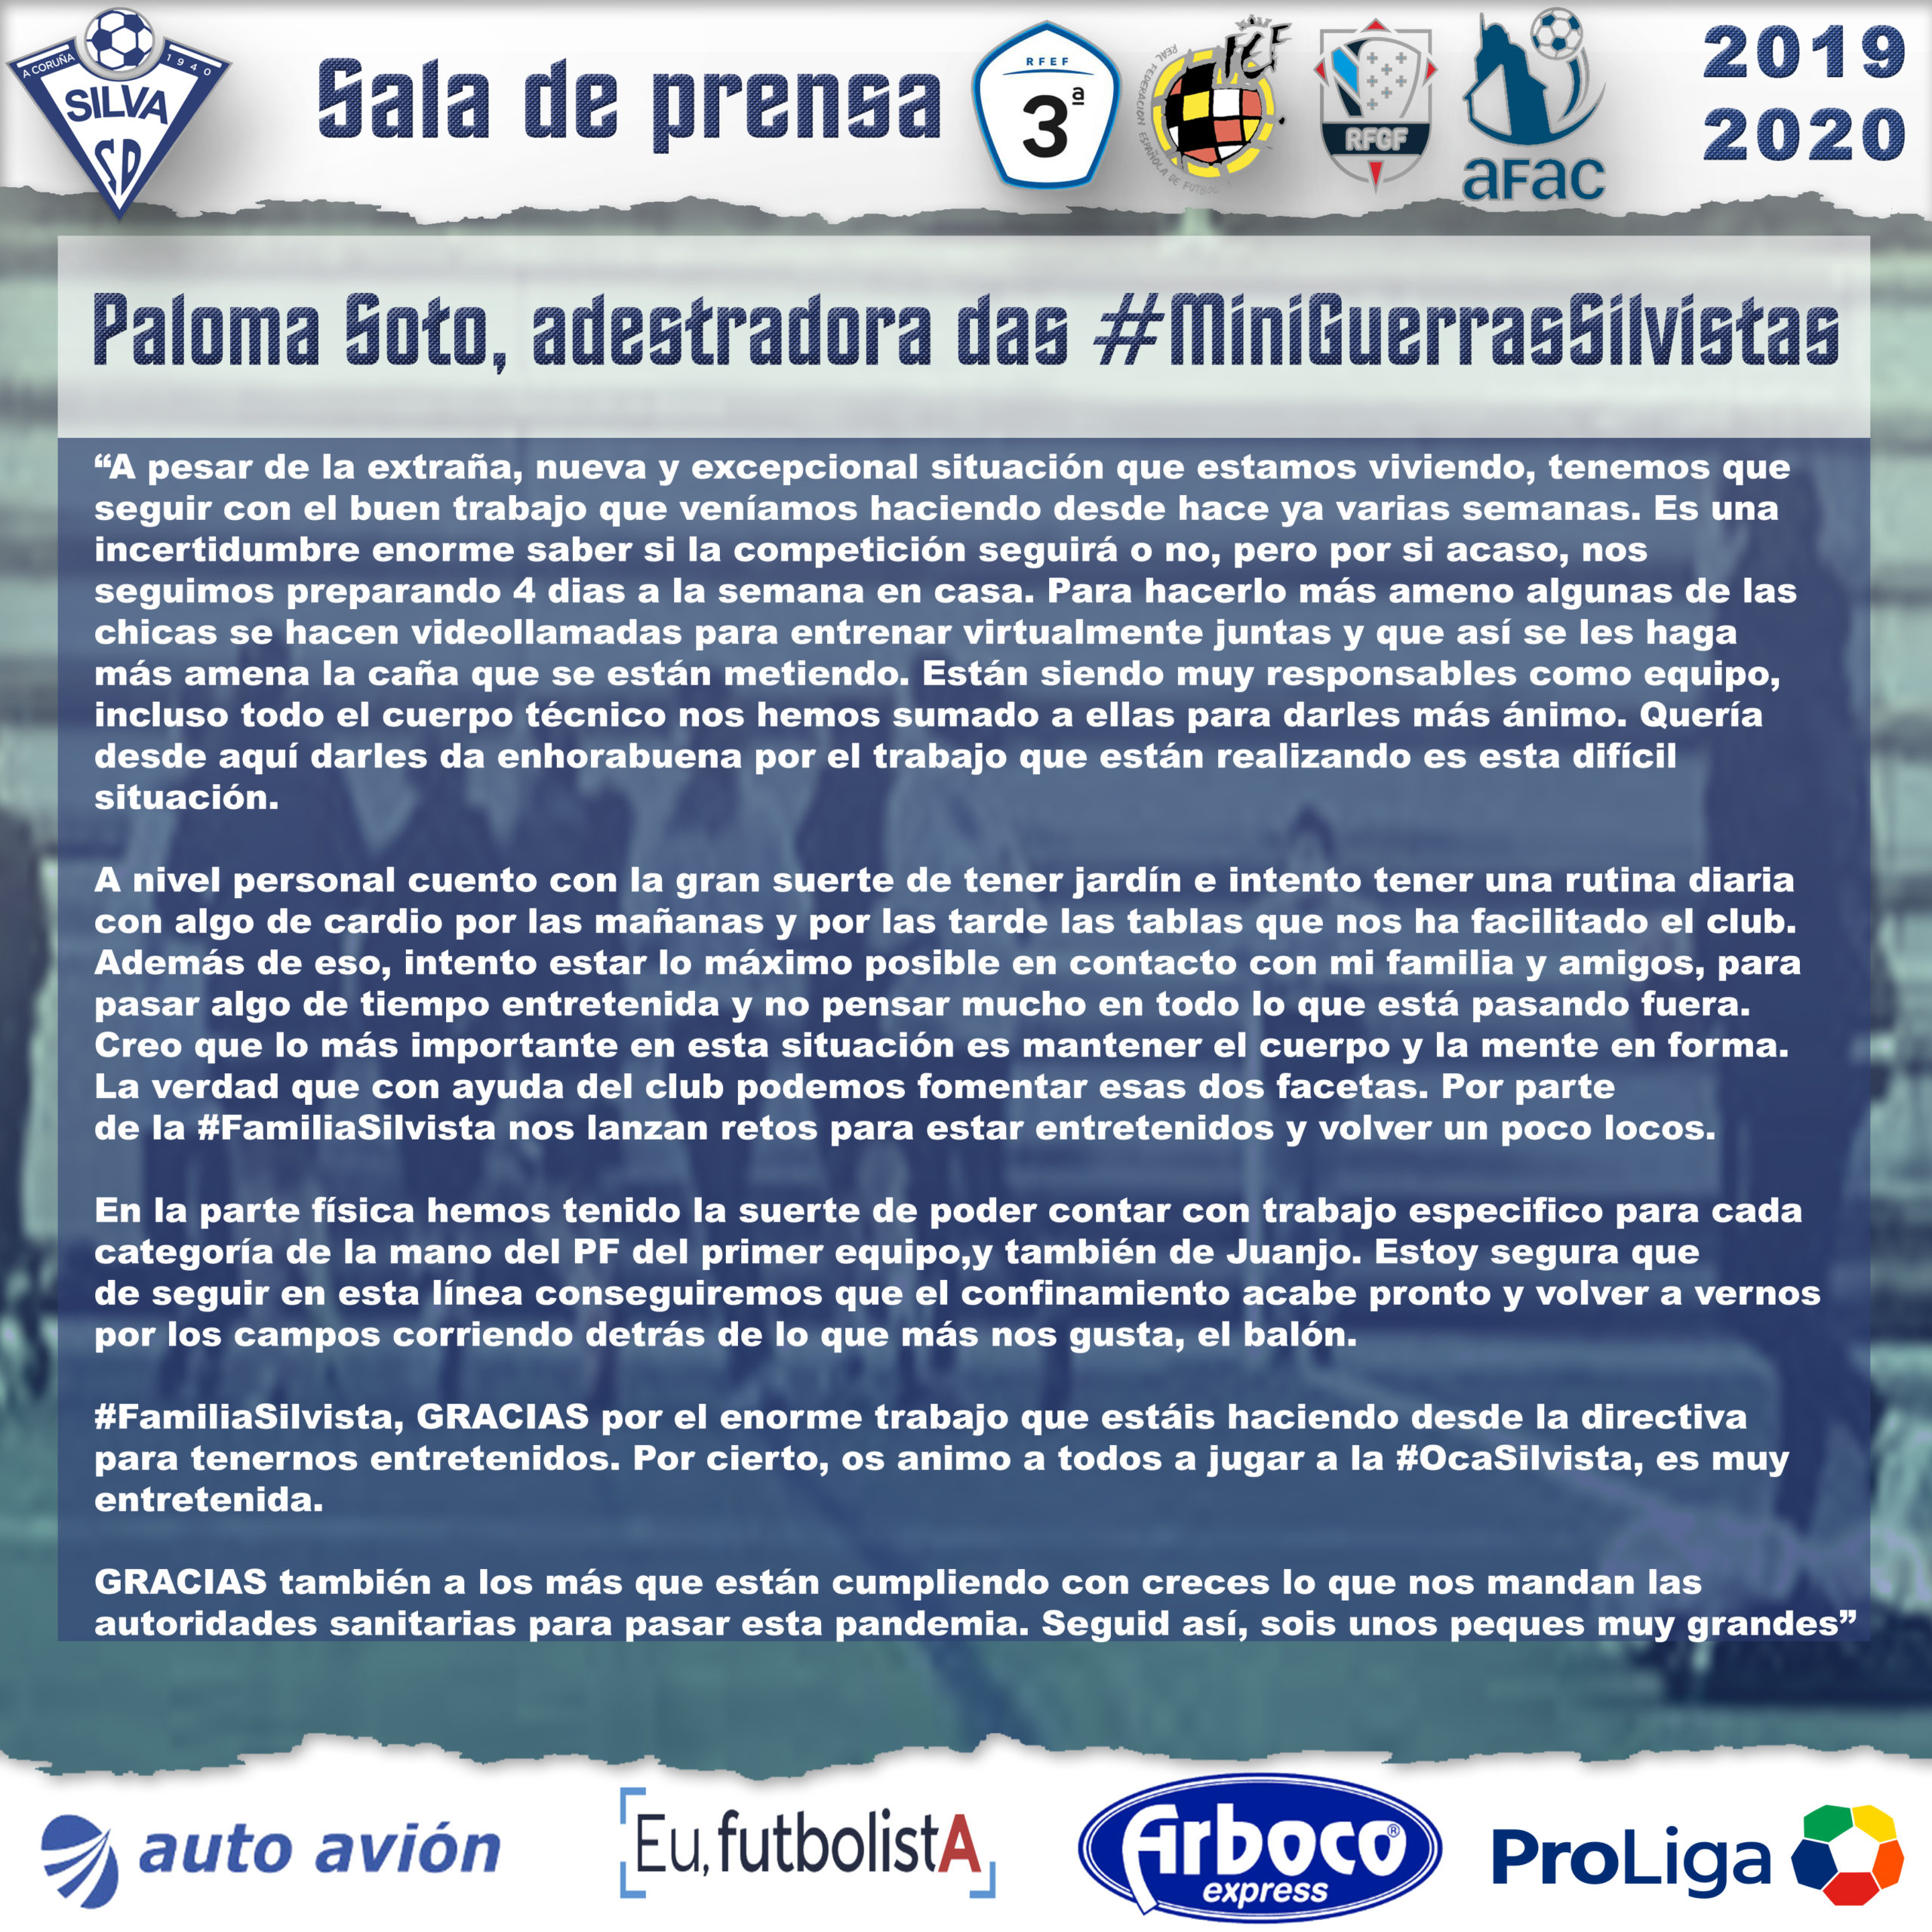 Paloma Soto detalla el trabajo diario de las #MiniGuerrerasSilvistas en este estado de alarma